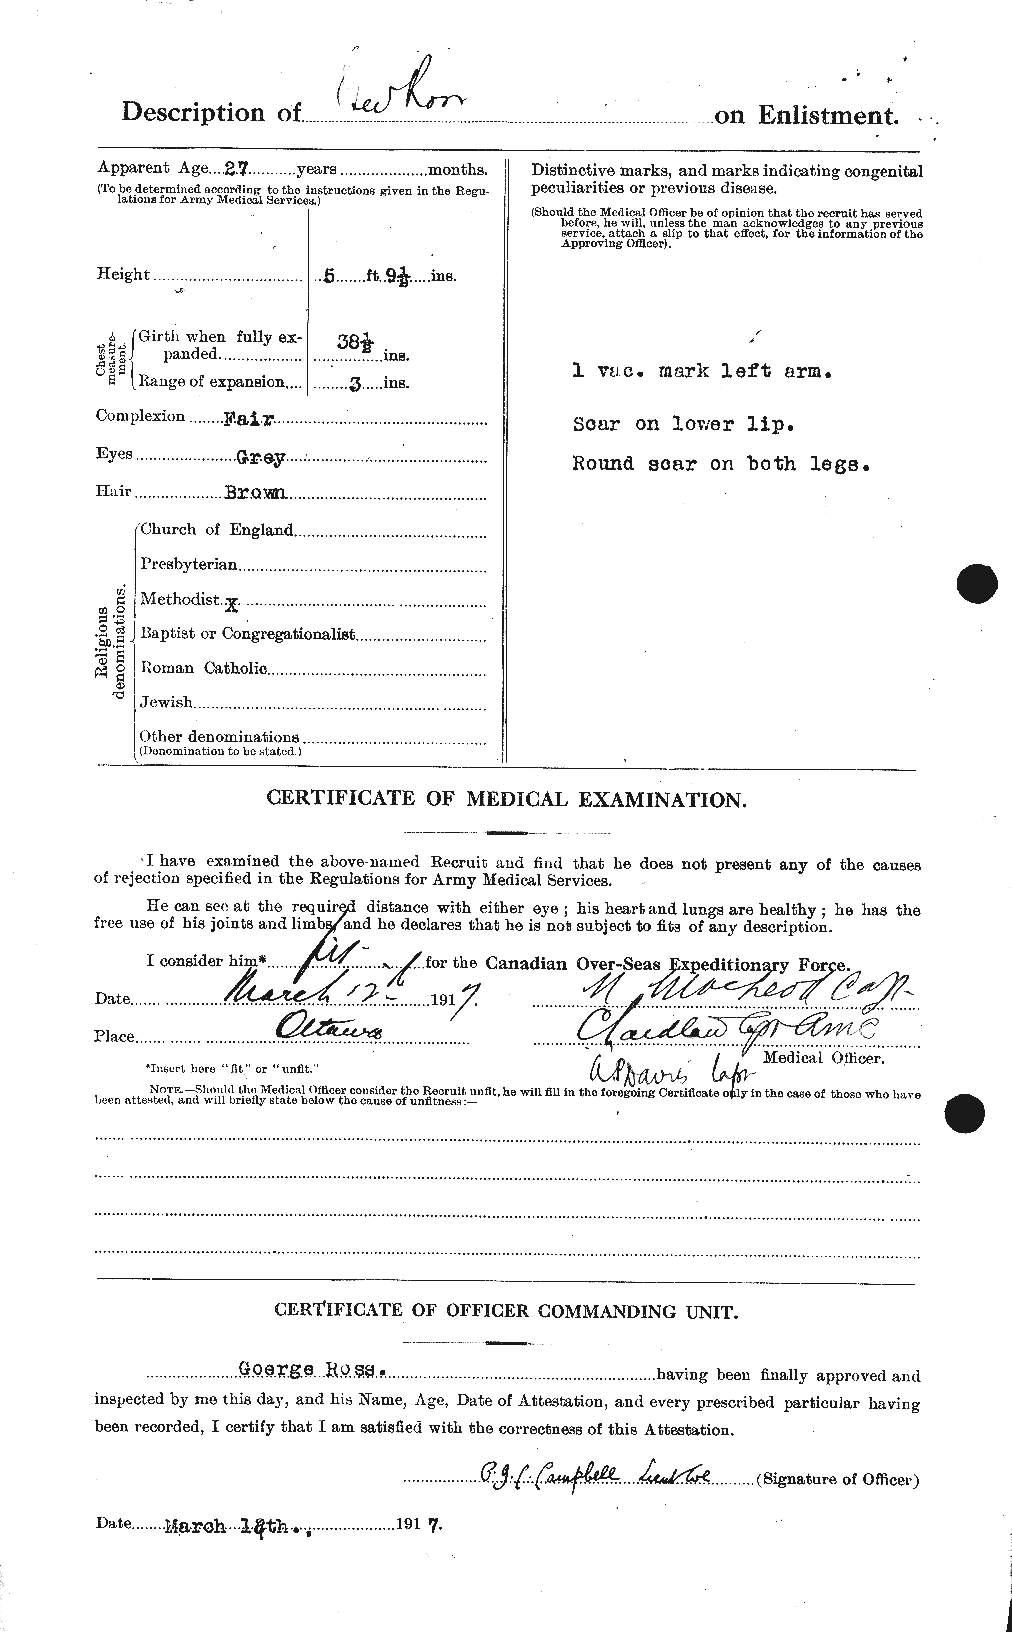 Dossiers du Personnel de la Première Guerre mondiale - CEC 613059b